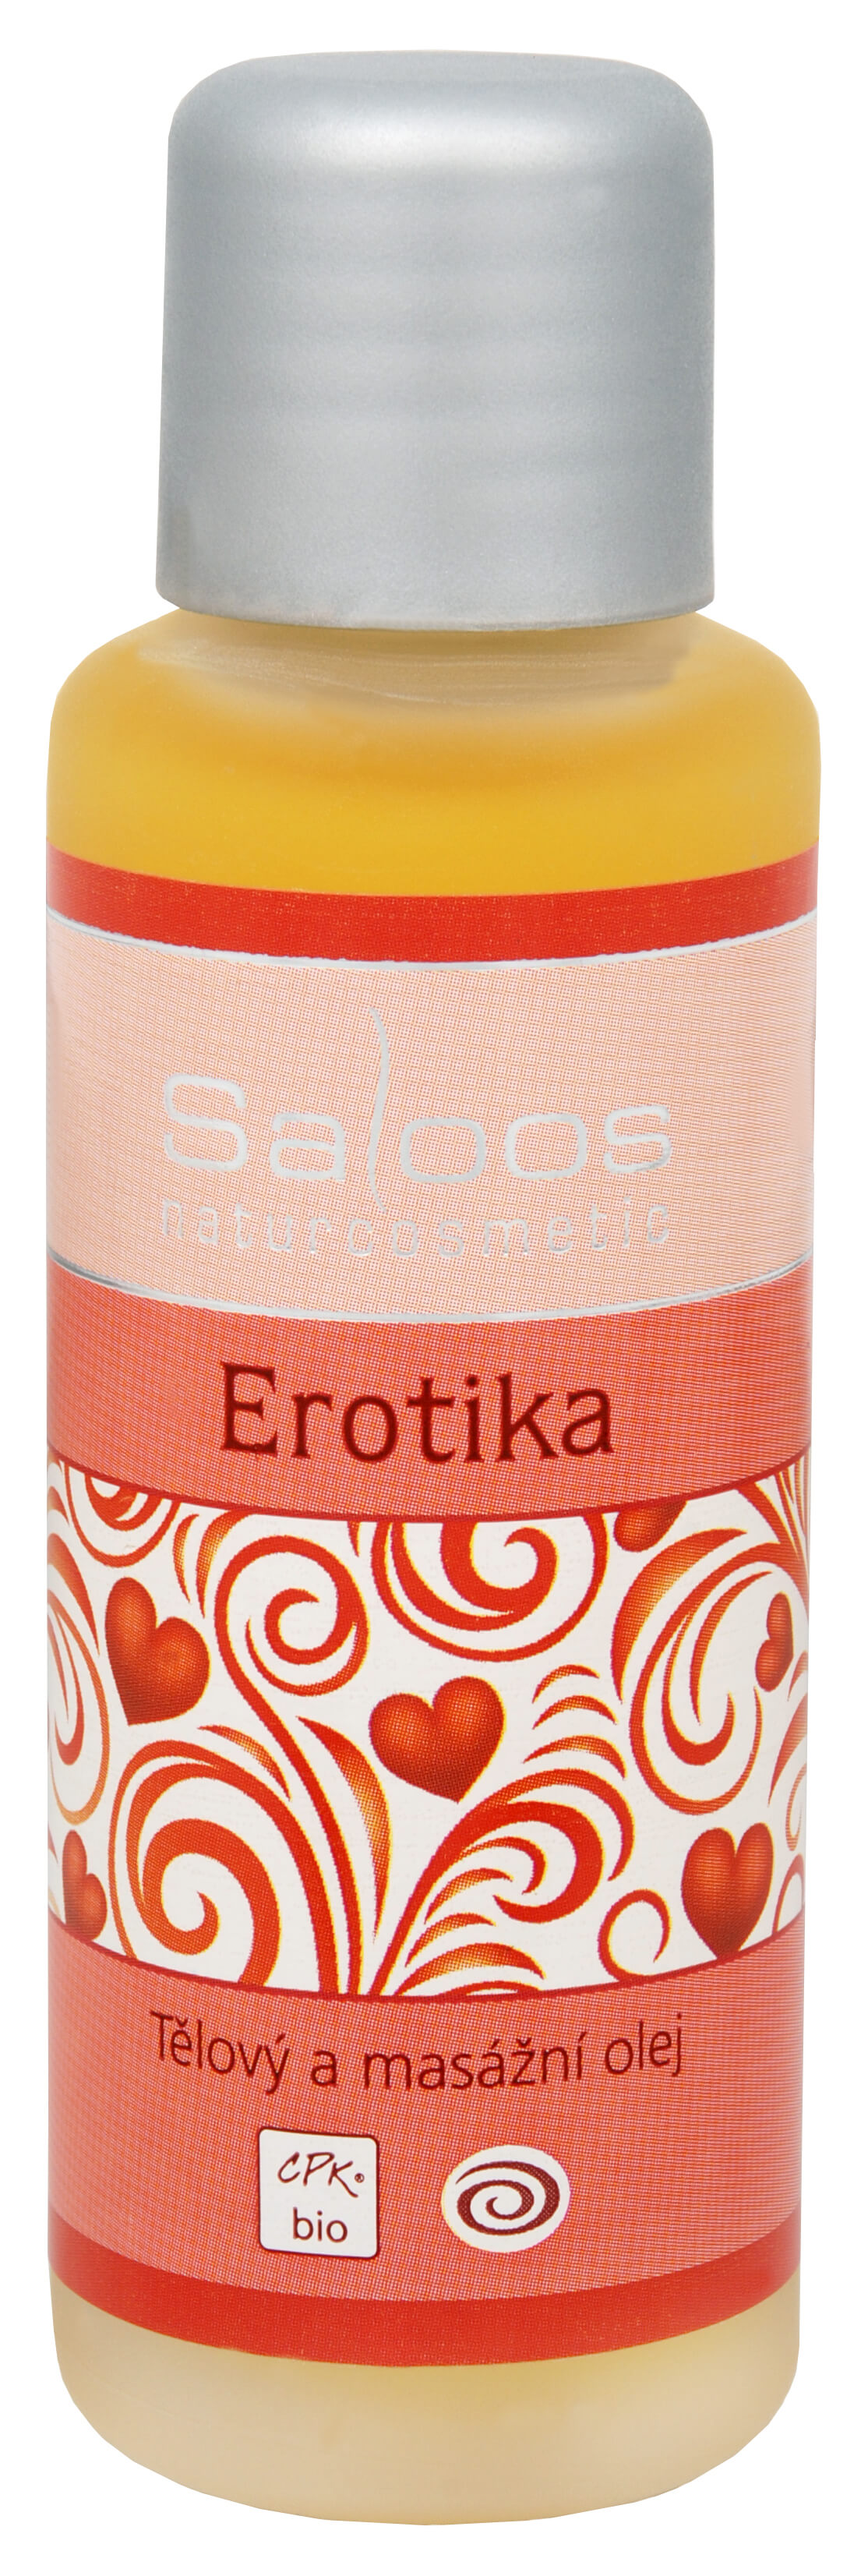 Zobrazit detail výrobku Saloos Bio tělový a masážní olej - Erotika 50 ml